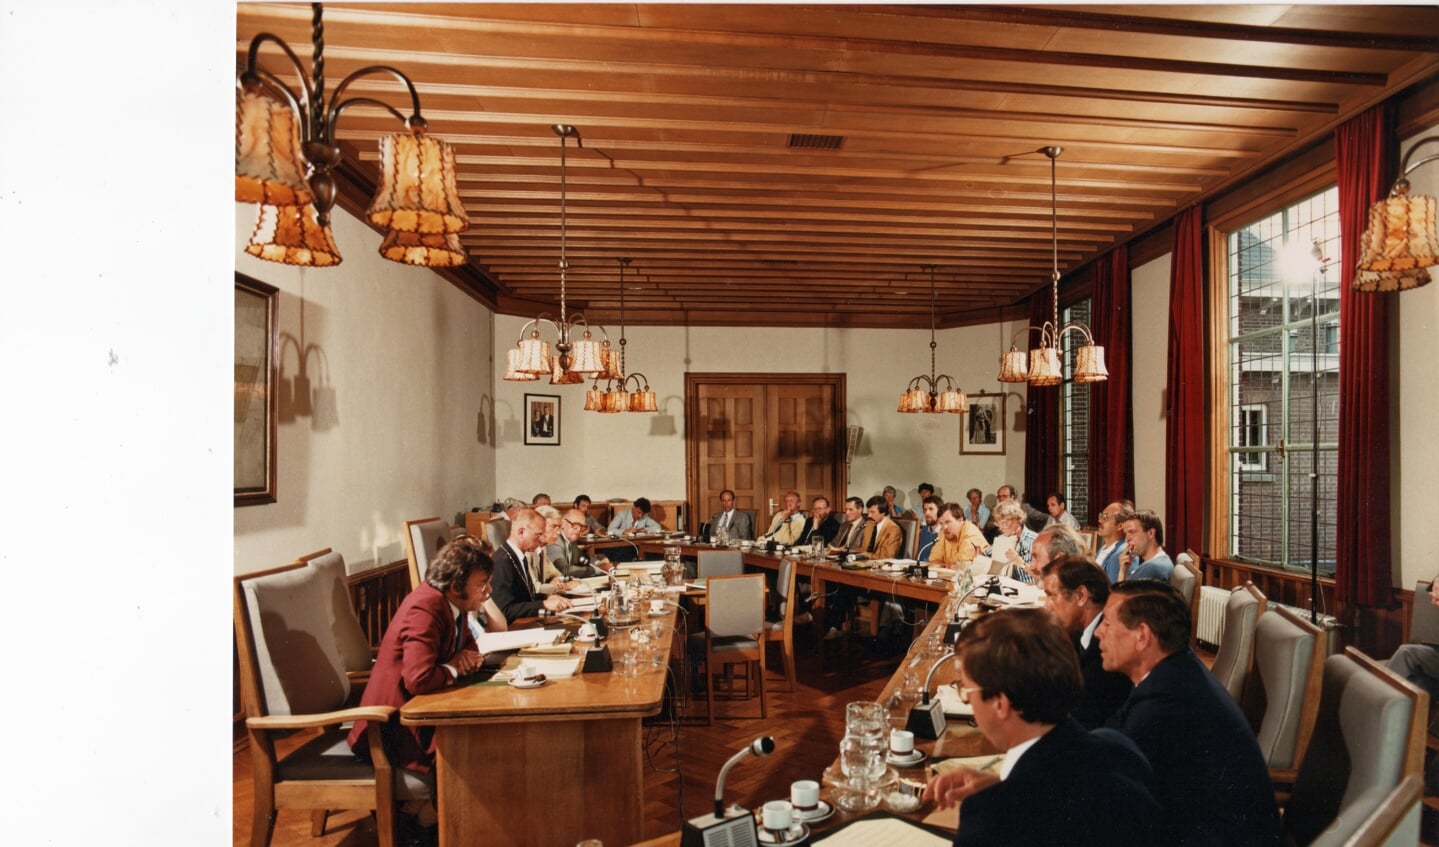 De allereerste gemeenteraadsvergadering, onder leiding van burgemeester Miedema, waarvan Martin Hoogendoorn (helemaal achterin) verslag deed. Het was 1982.